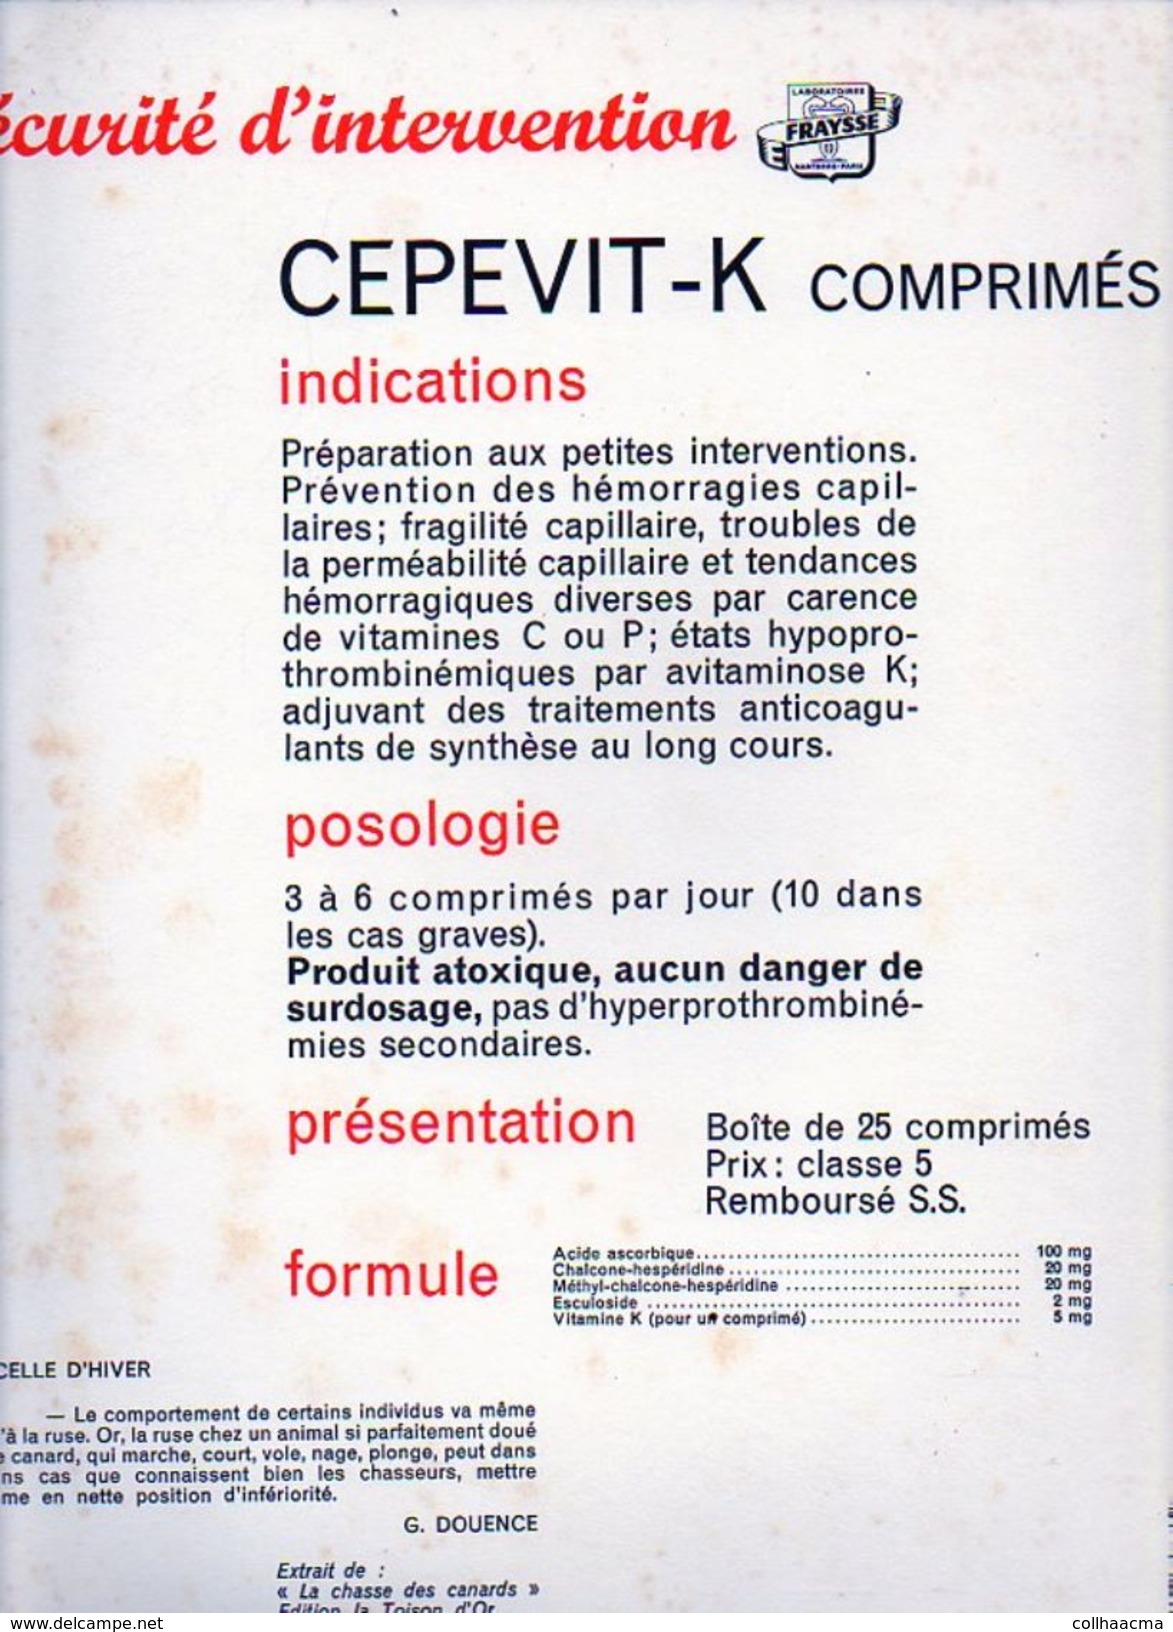 Publicité Pharmaceutique Laboratoires Fraysse / Lithographie De Maurice Parent " La Sarcelle D'Hiver" Texte De G.Douence - Lithographies